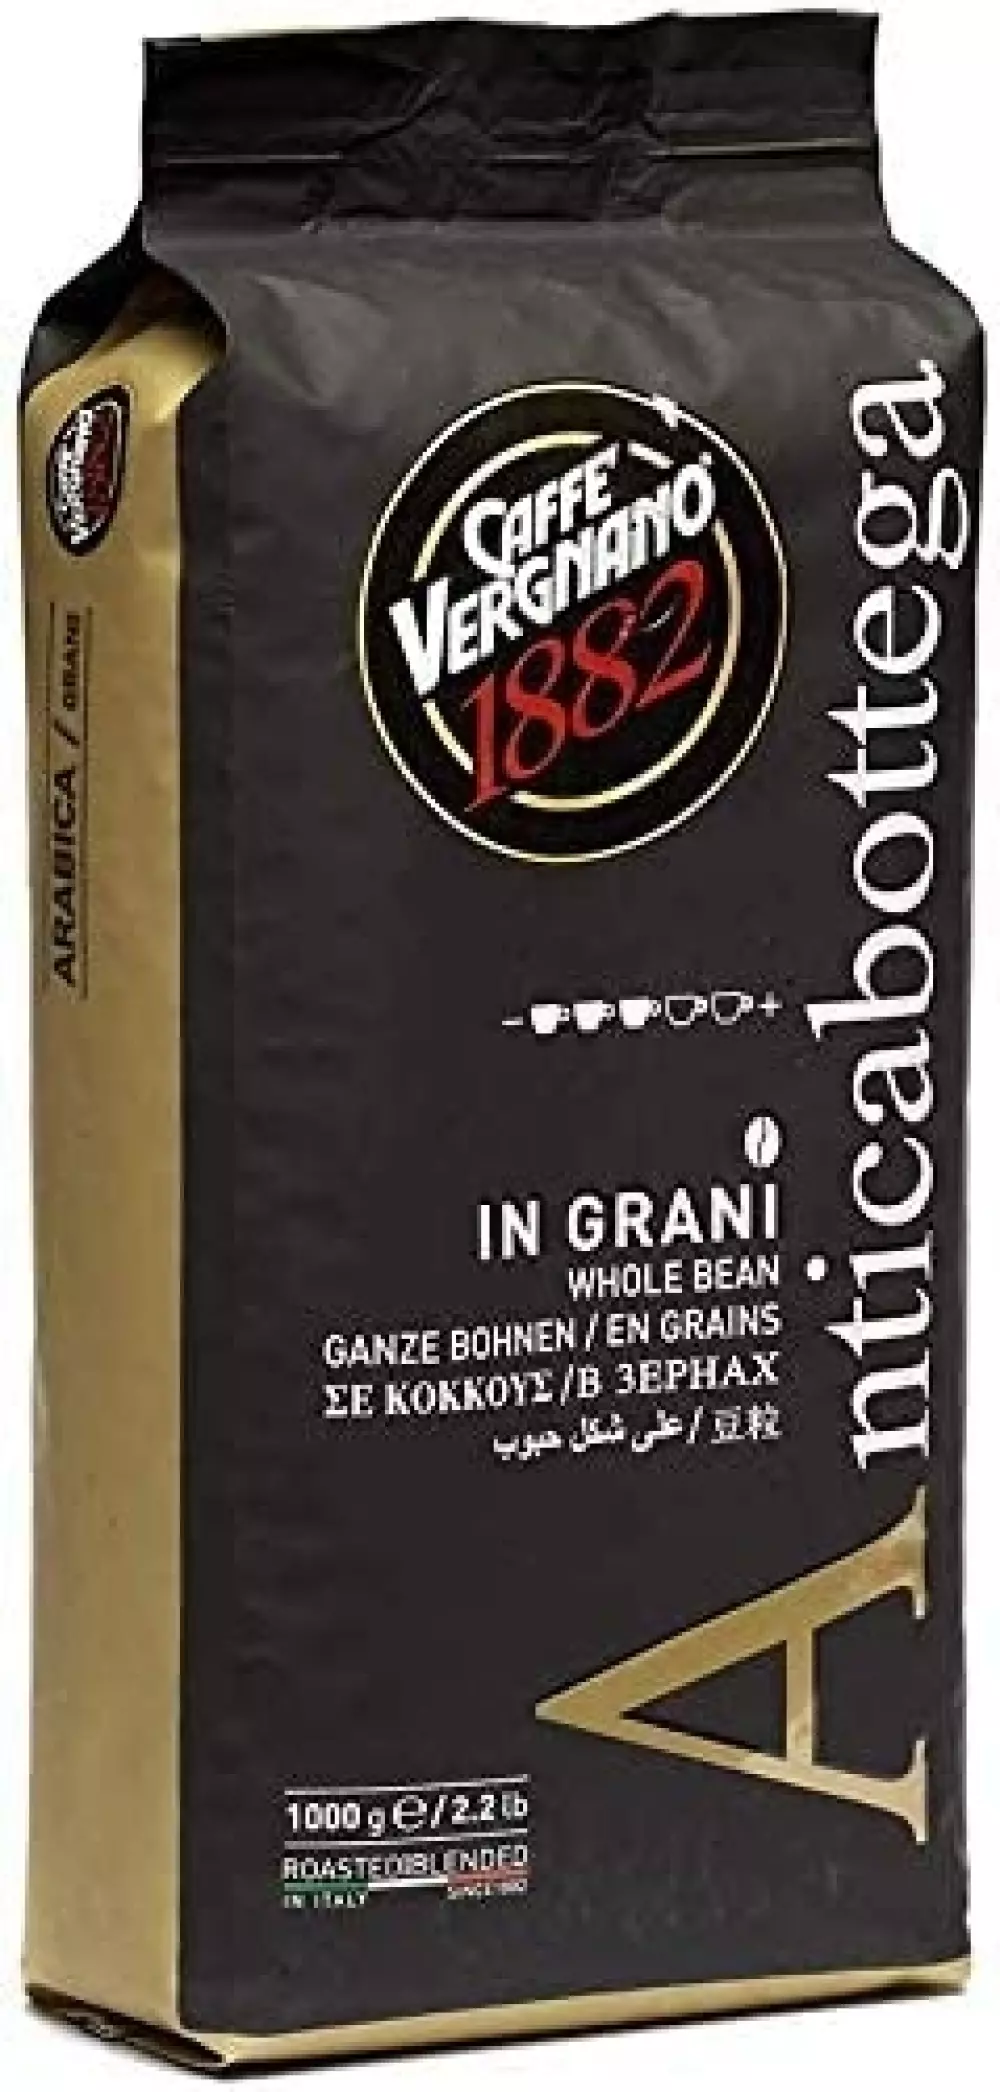 Kaffebønner Antica Bottega 1 kg - Vergnano ca. 90% Arabica 10% Robusta Antica Bottega 1000g x 6 beans 048 Kaffe og Te Caffè Vergnano 1882